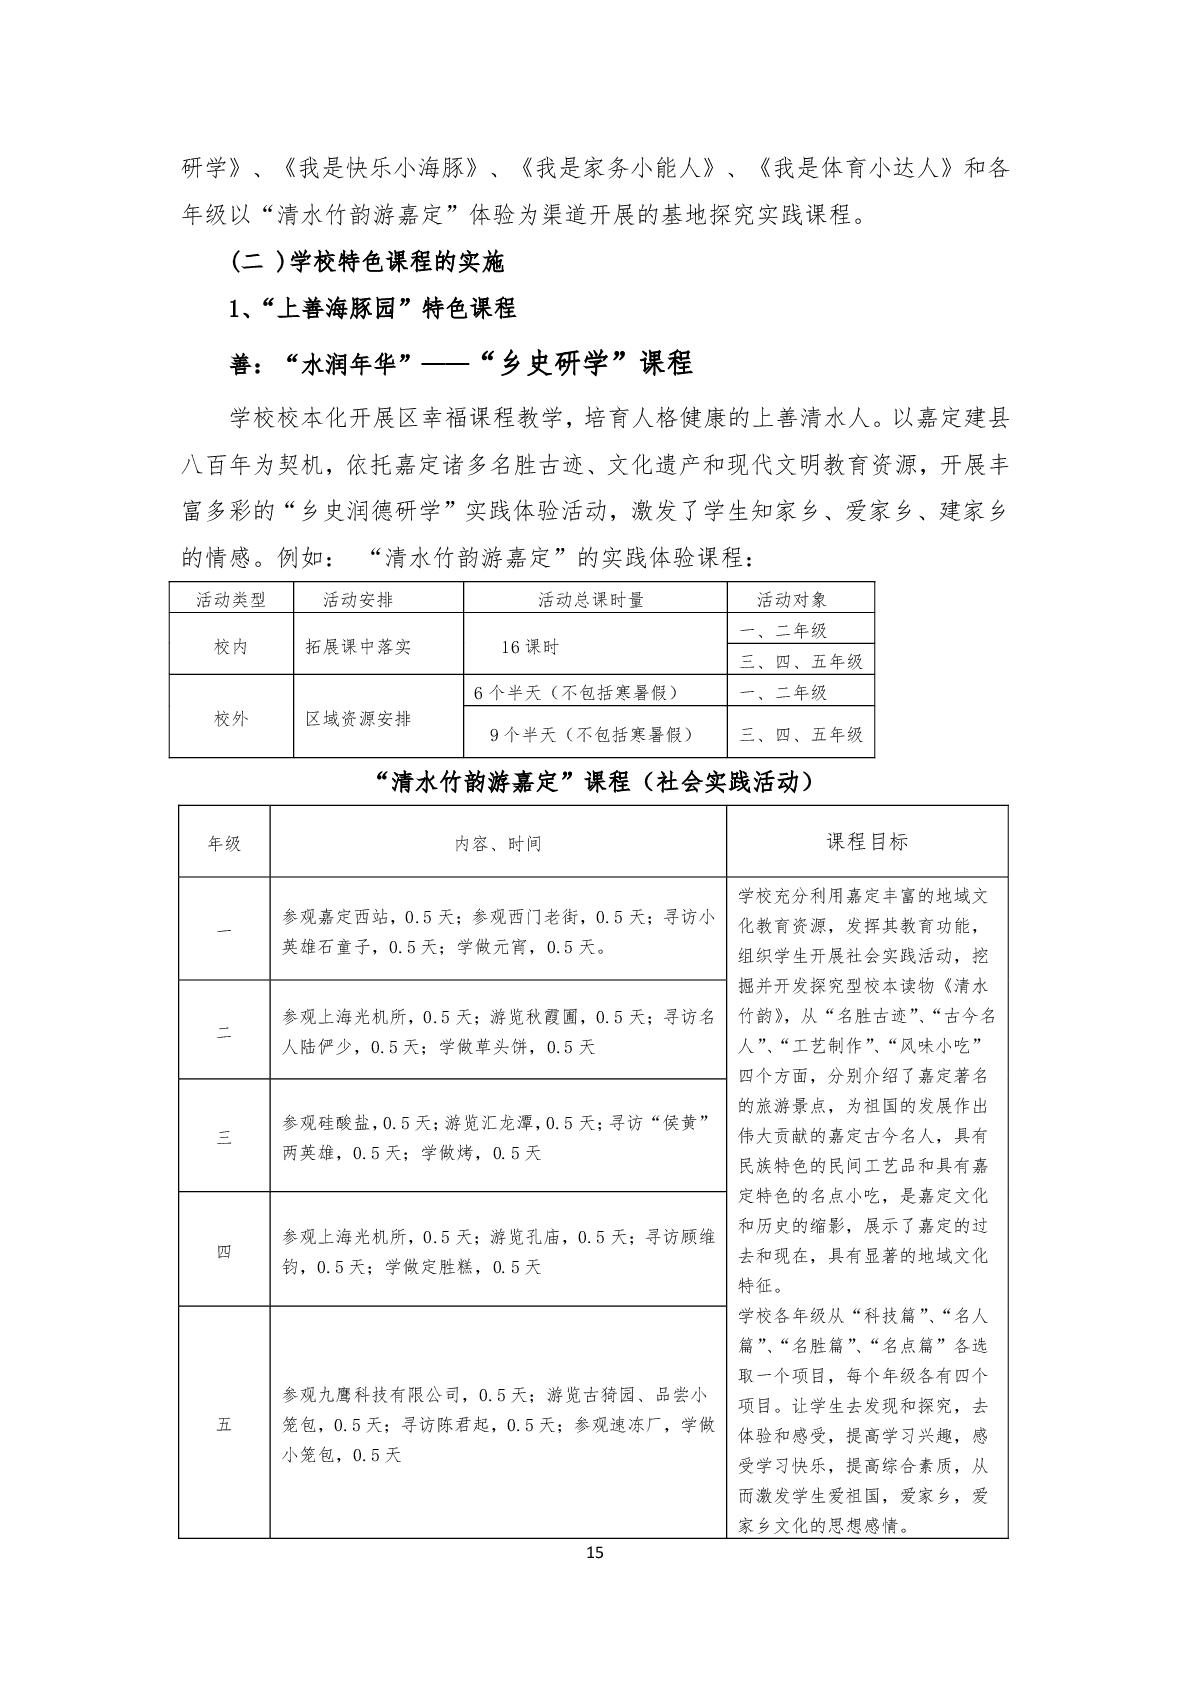 2.上海市嘉定区清水路小学2020学年度课程计划-015.jpg